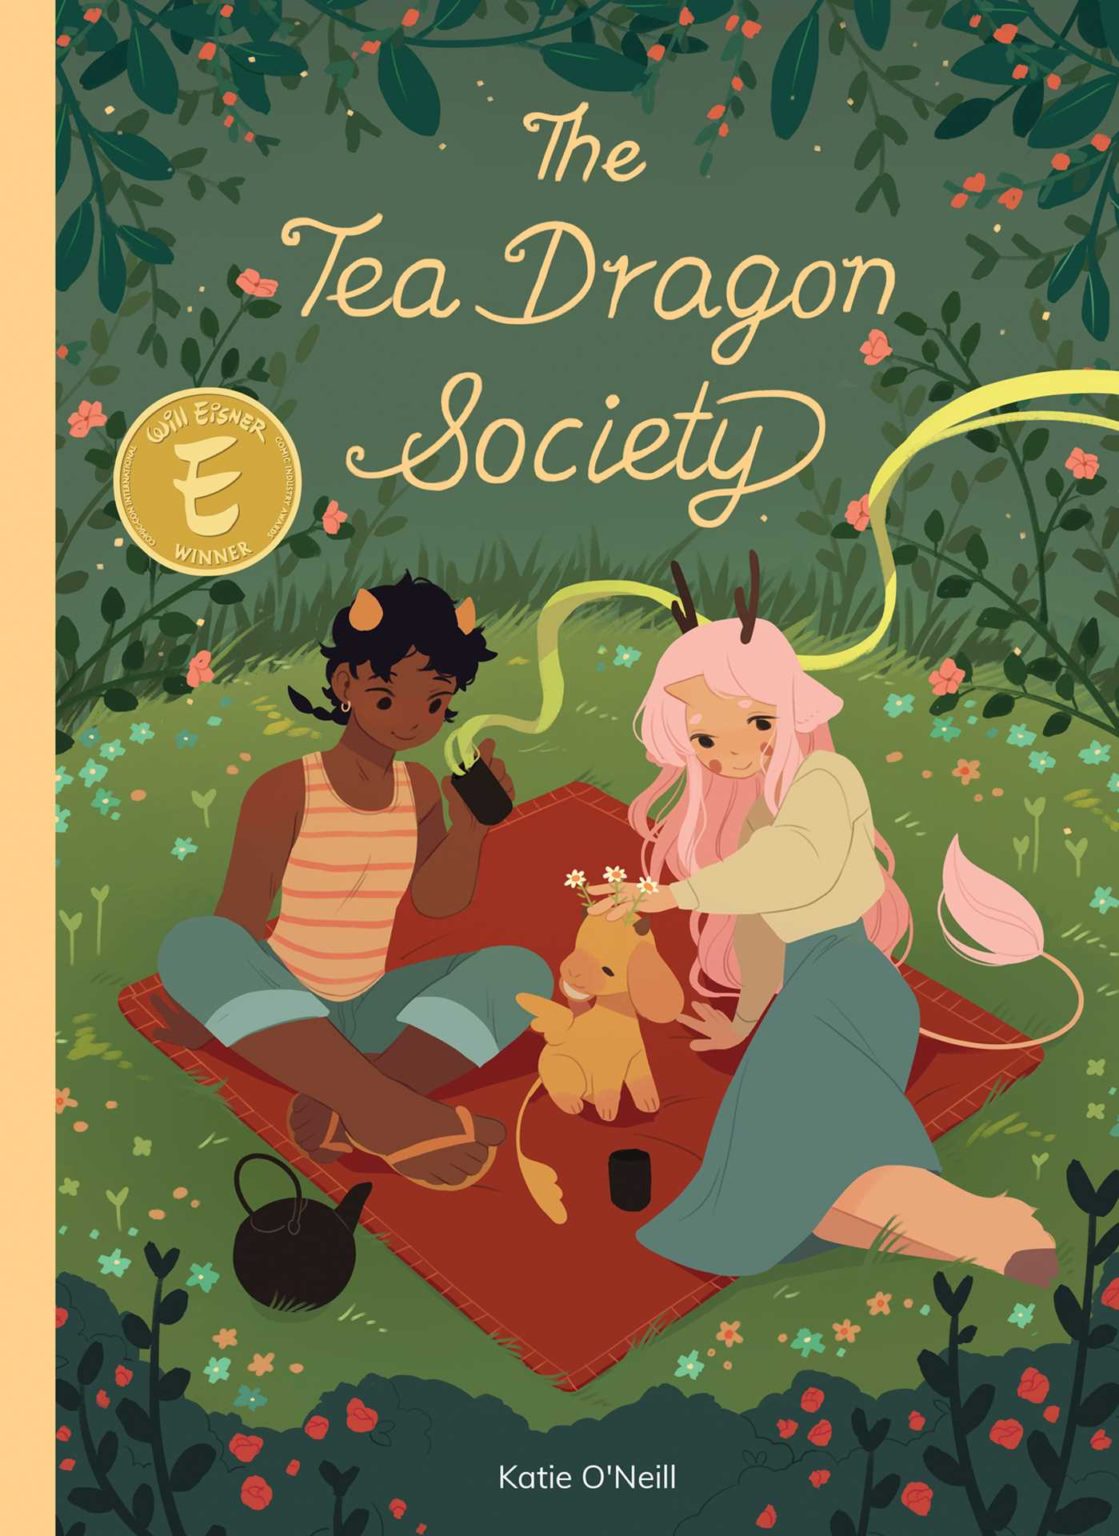 The Tea Dragon Society by Kay O